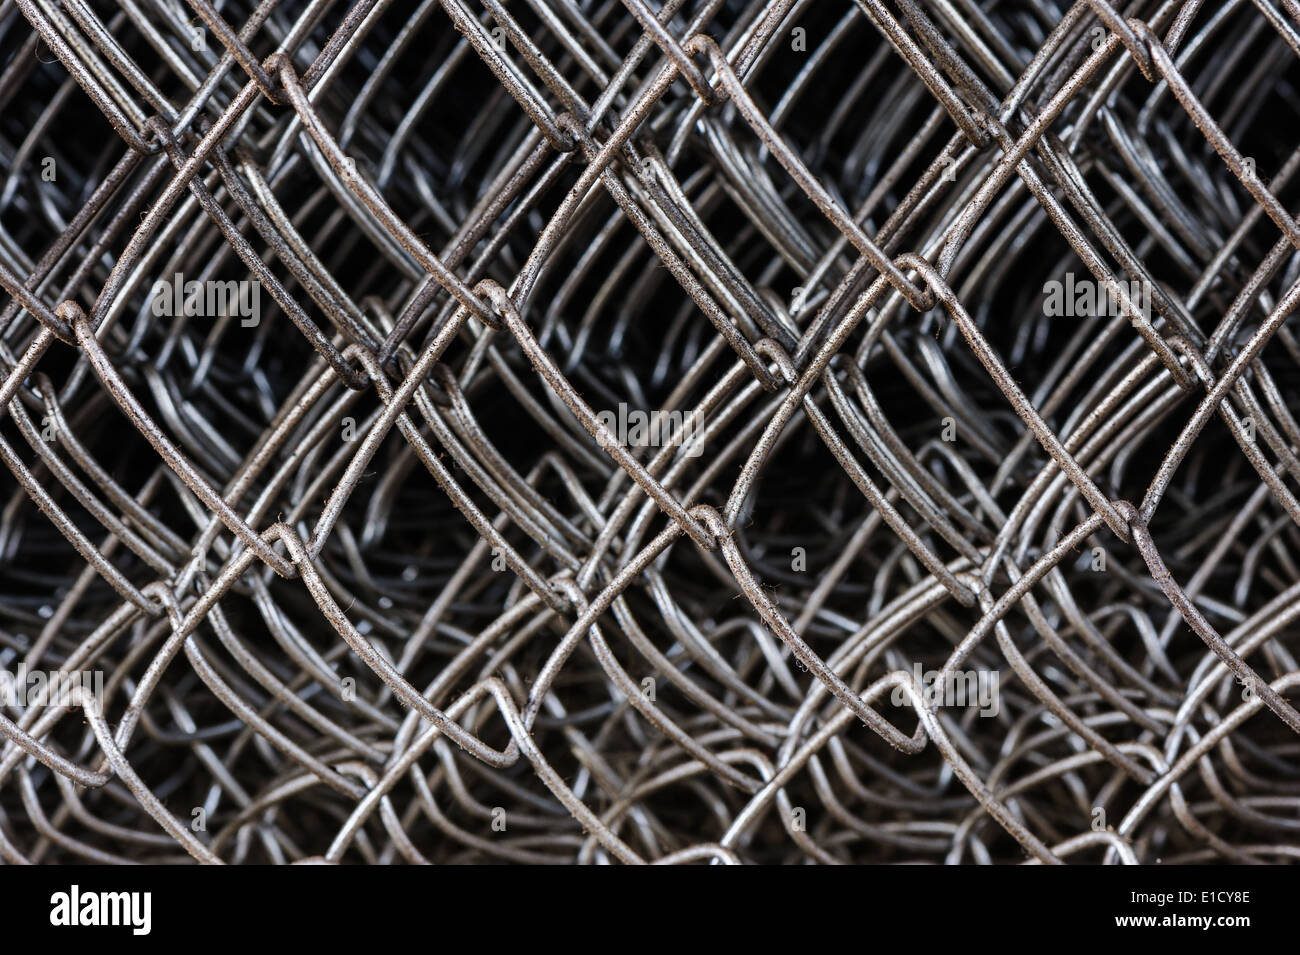 metal netting mesh Stock Photo